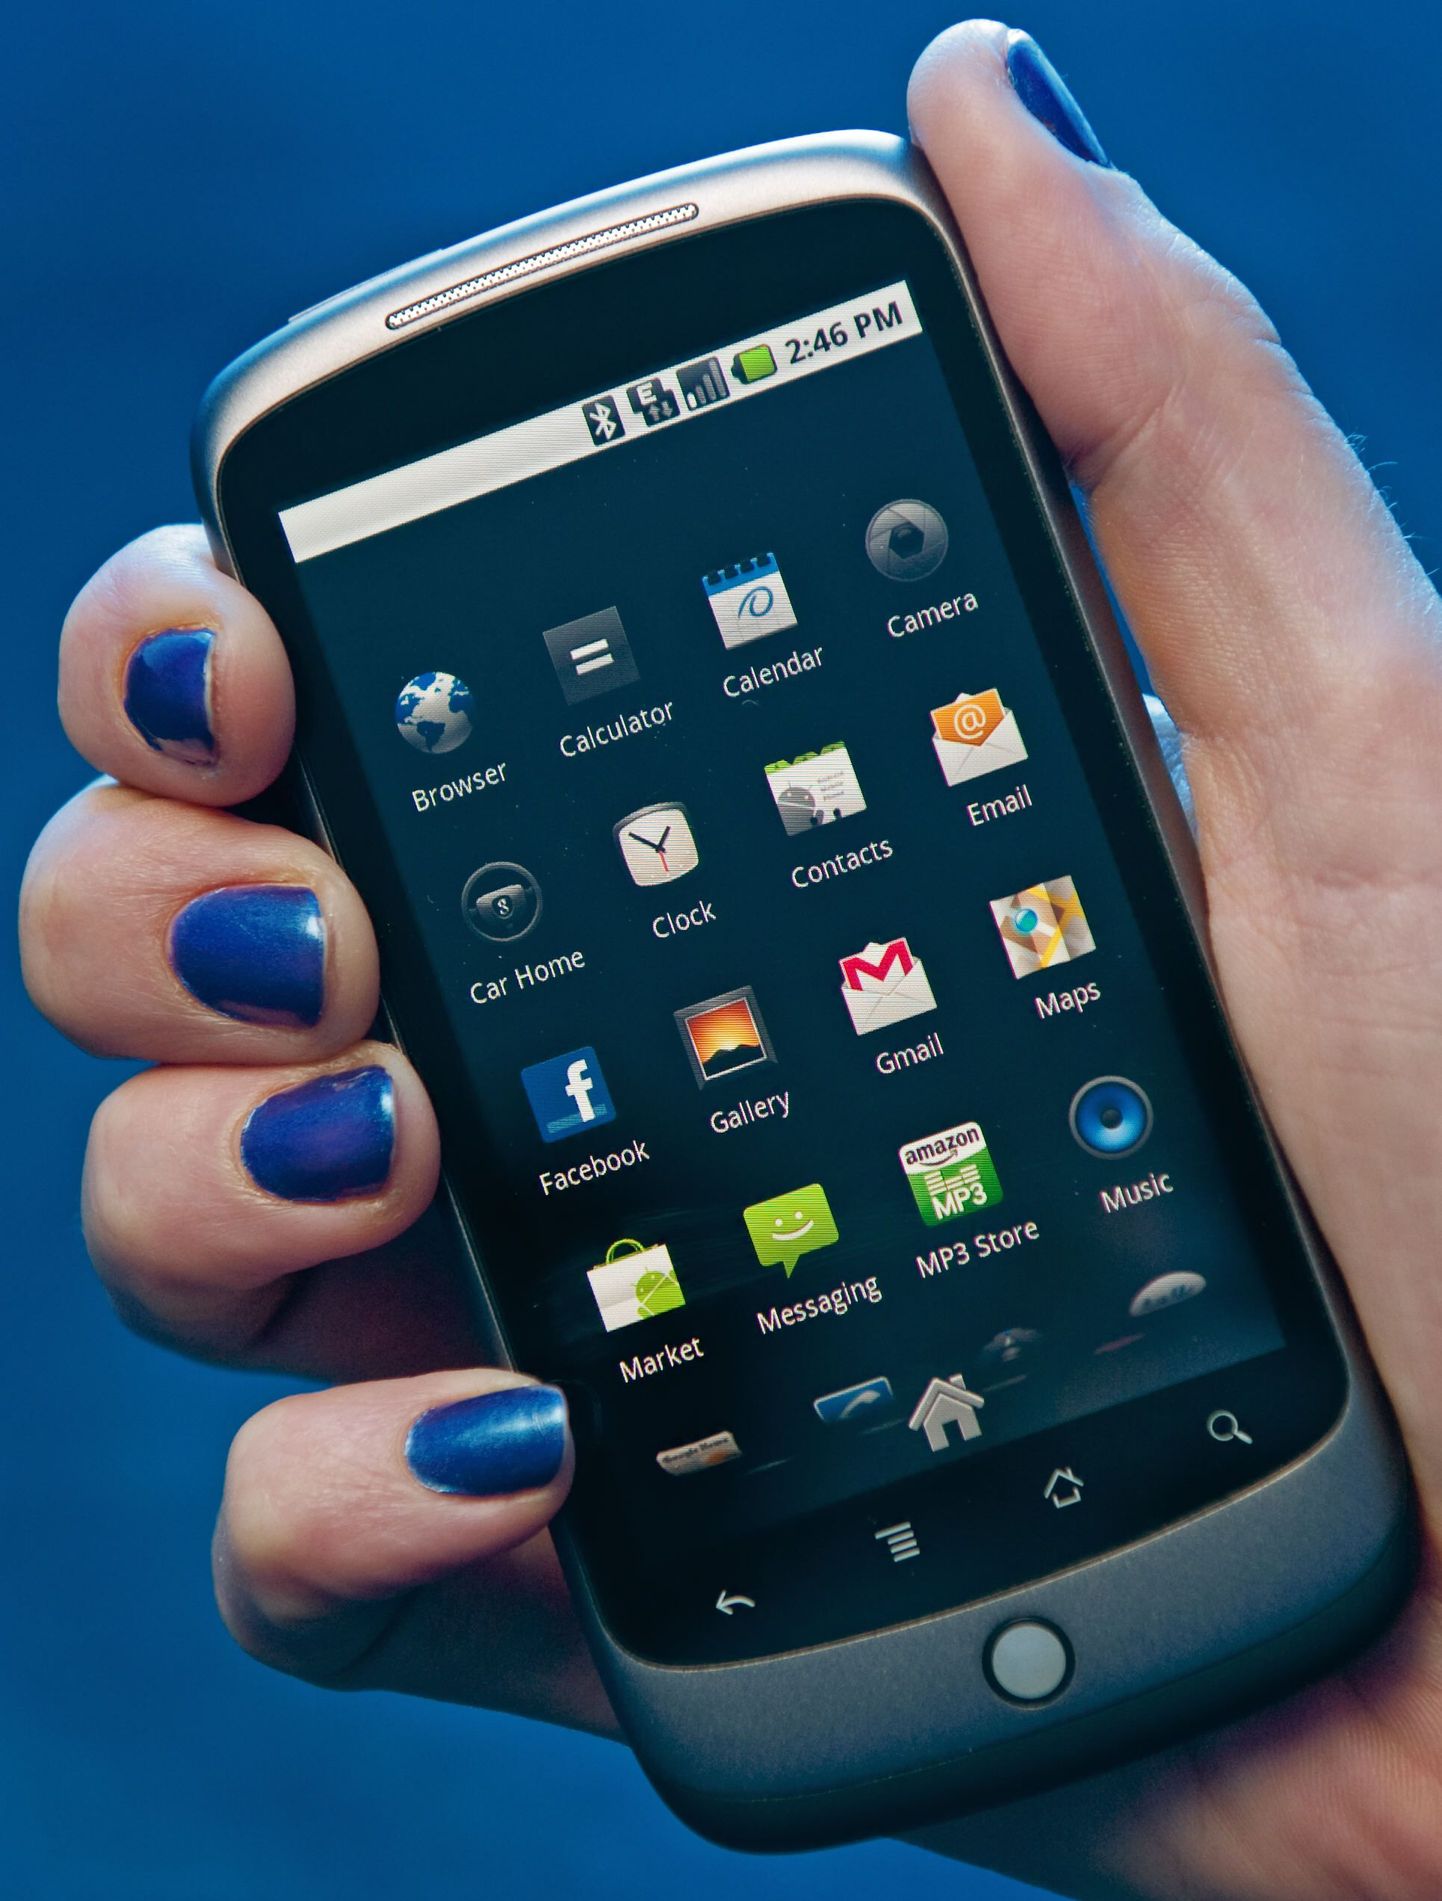 Androidi kasutav nutitelefon Google Nexus One